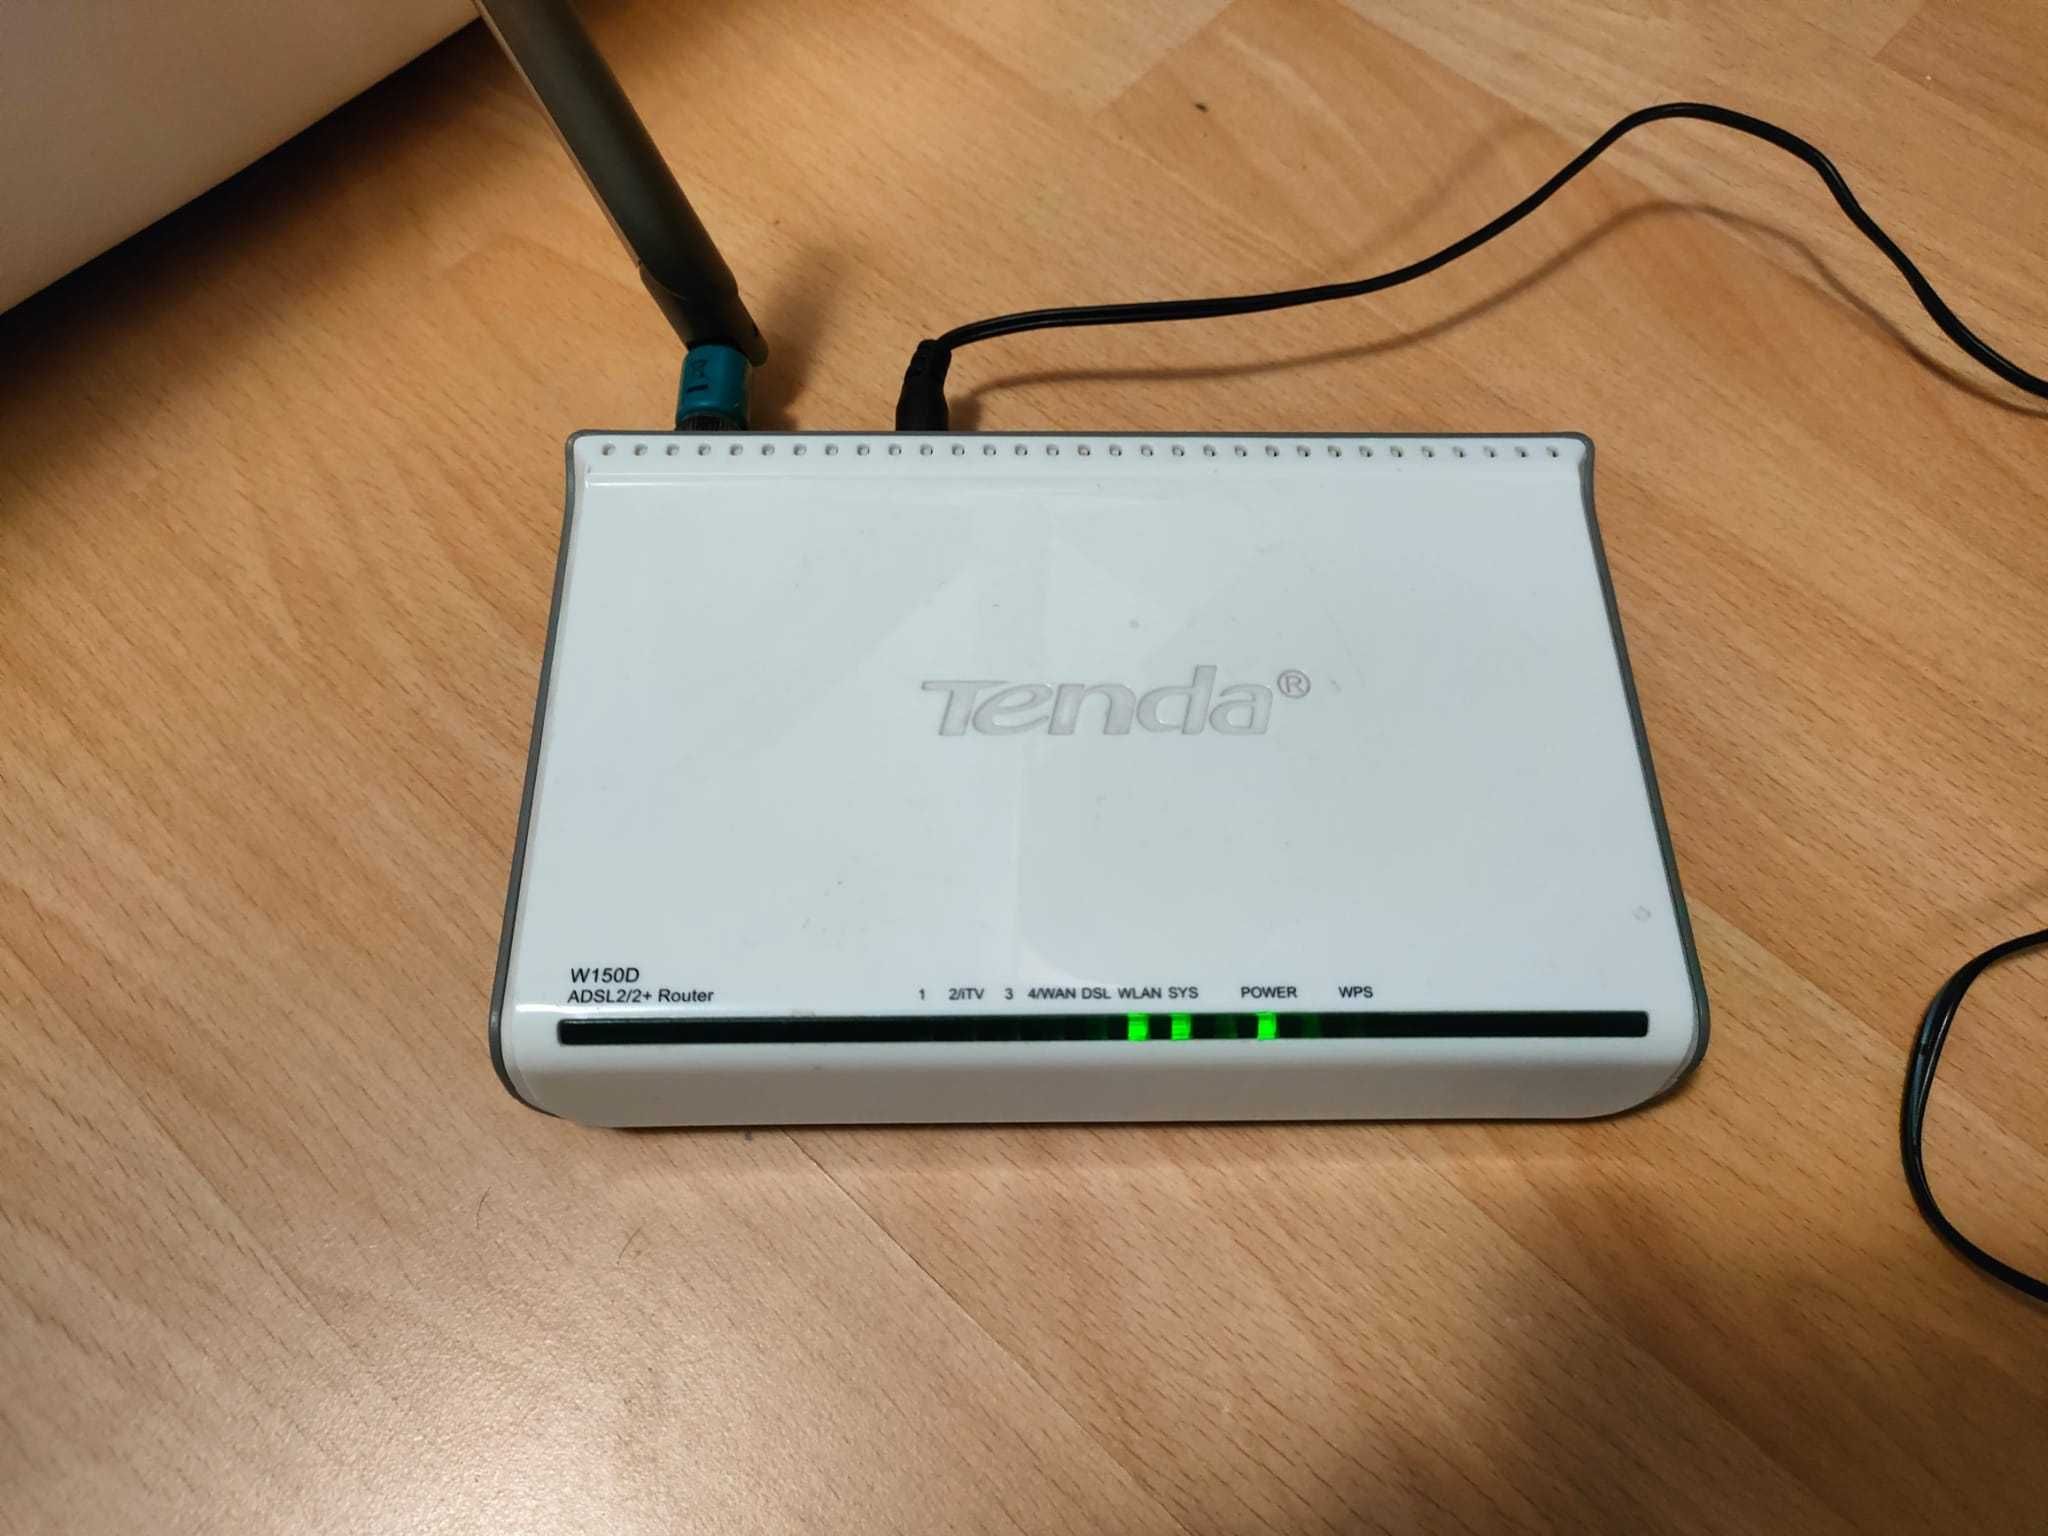 Router Wireless TENDA W150D ADSL